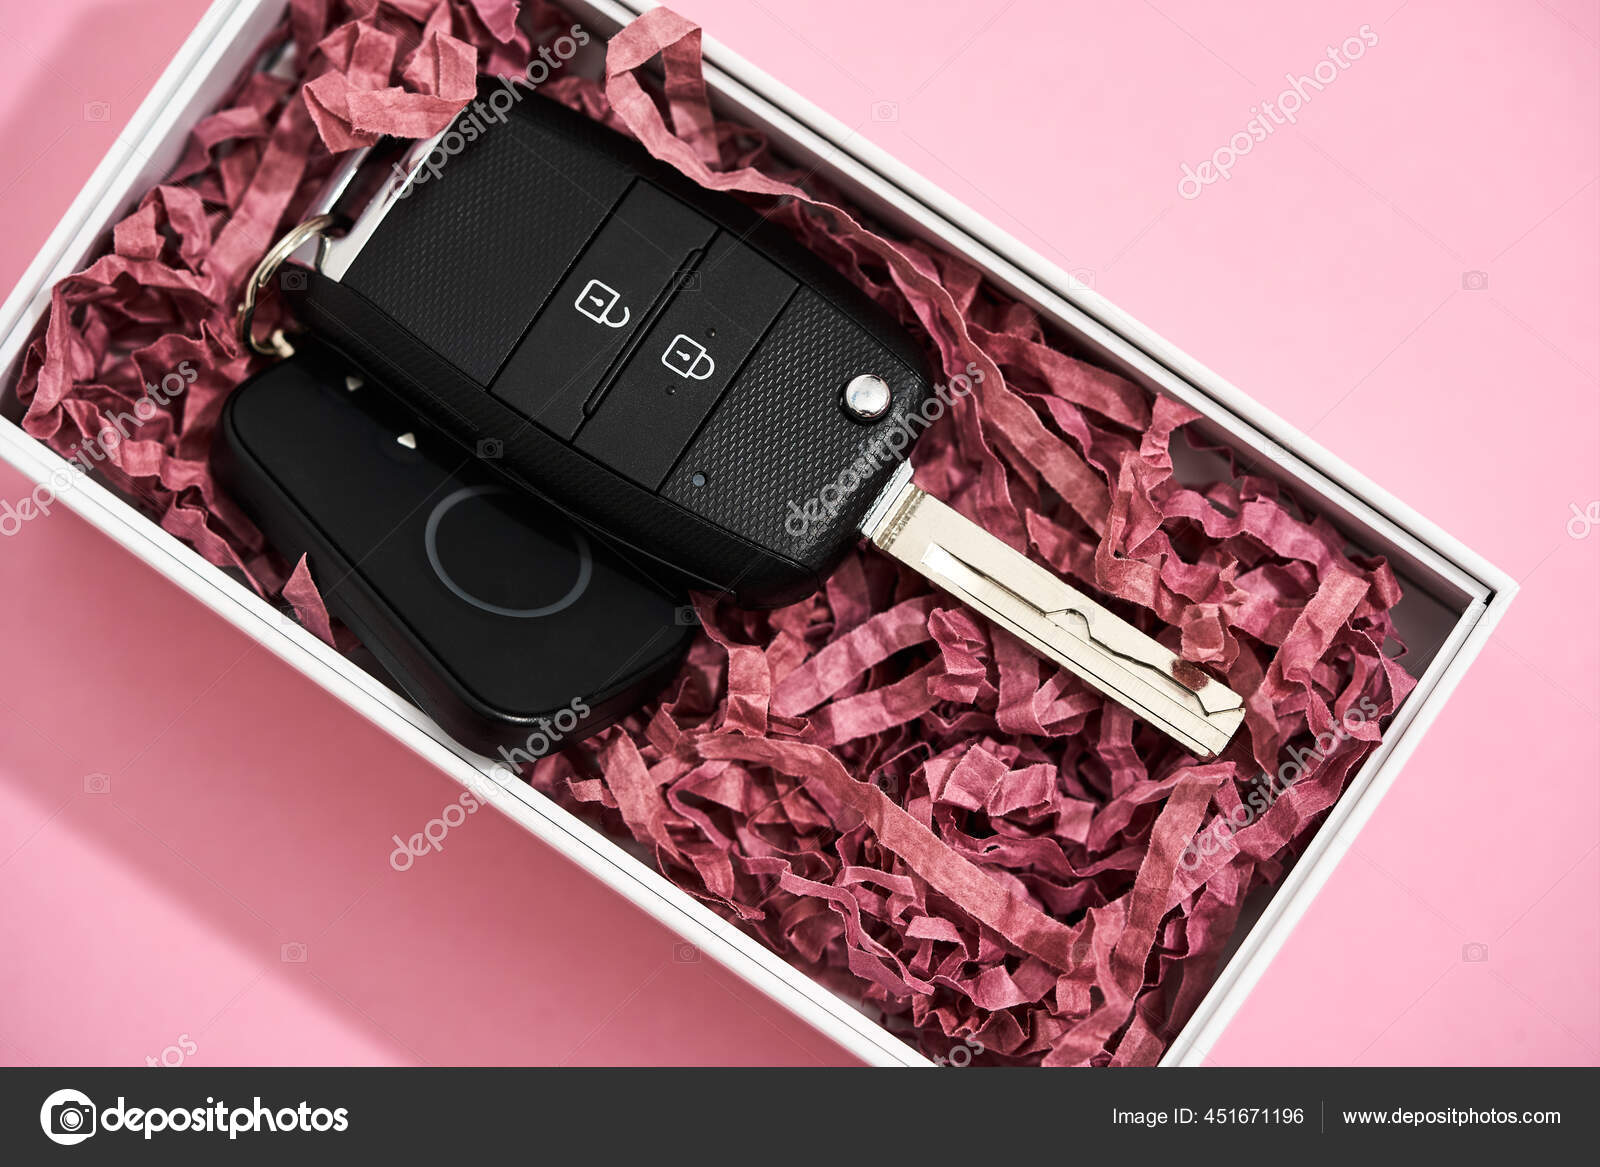 Die beste Überraschung für die geliebte Frau. Draufsicht auf einen  Autoschlüssel in Geschenkbox auf pastellrosa Hintergrund - Stockfotografie:  lizenzfreie Fotos © LanaStock 451671196